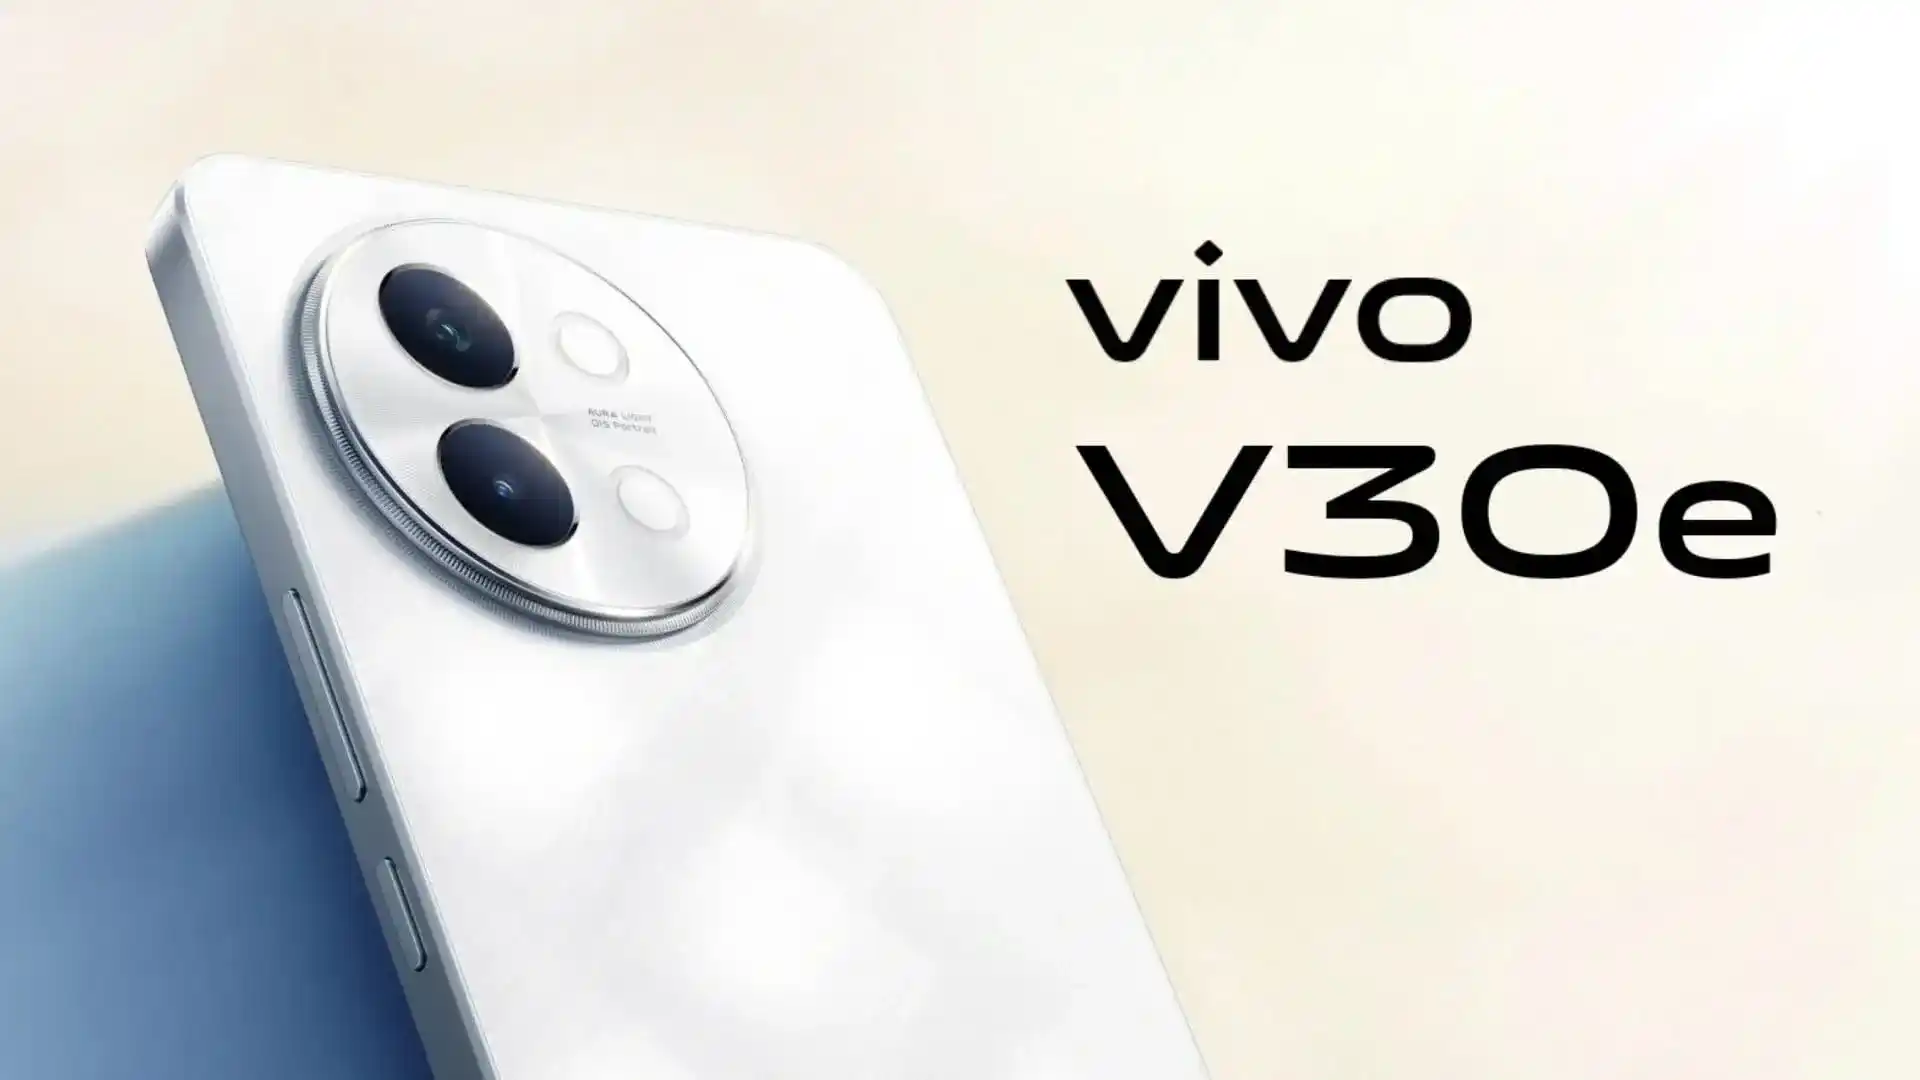 Un insider ha revelado el aspecto y las especificaciones del nuevo smartphone Vivo V30e